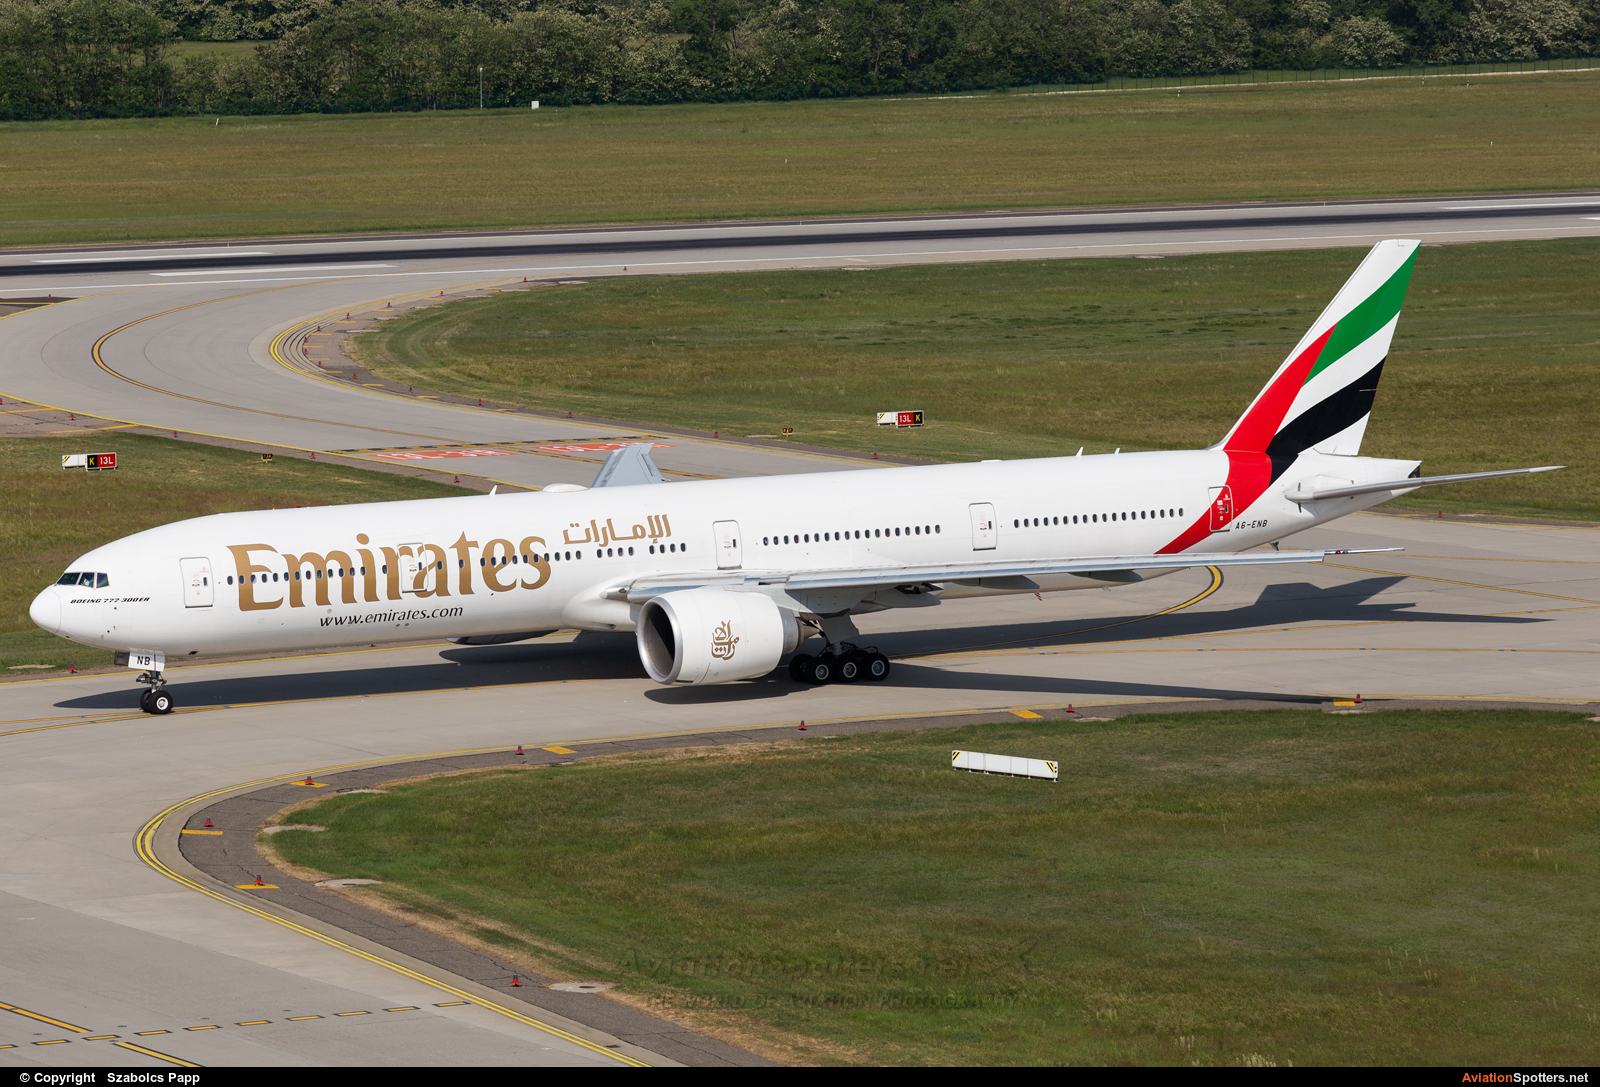 Emirates Airlines  -  777-300ER  (A6-ENB) By Szabolcs Papp (mr.szabi)